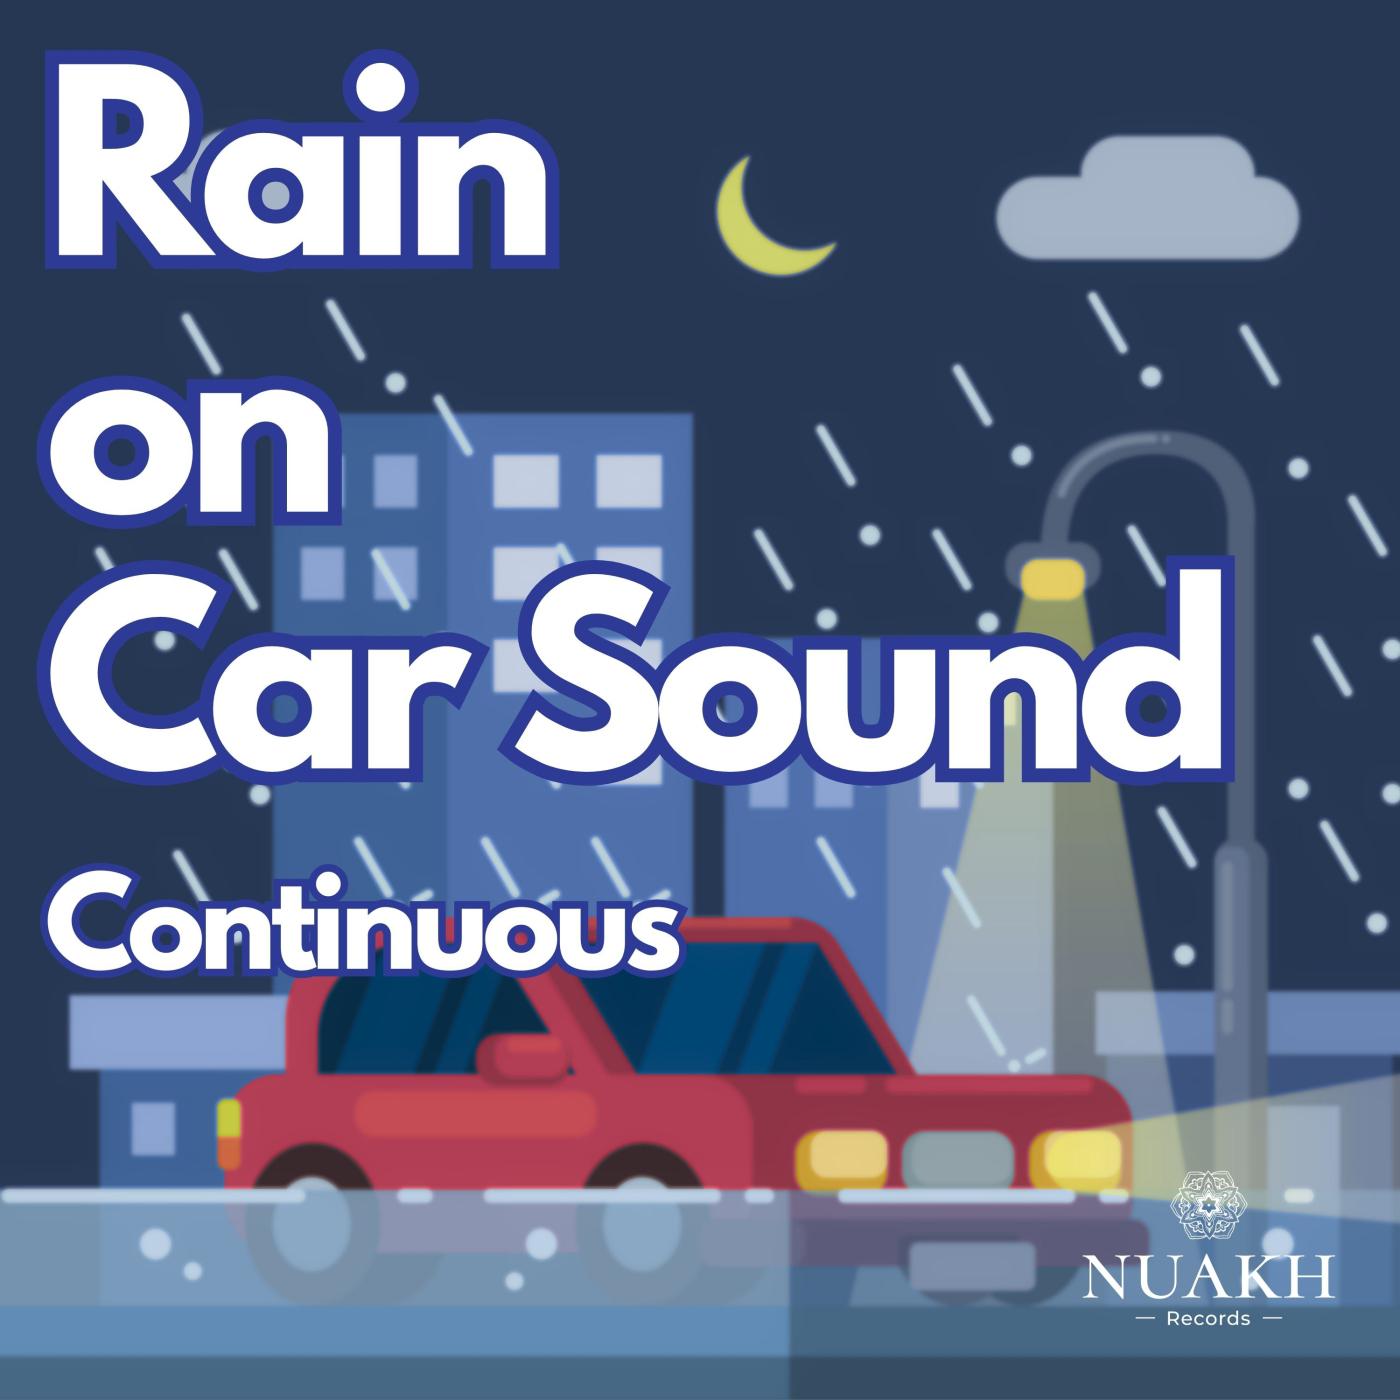 Rain for Sleep - Rain on Car, Pt. 02 (Continuous)